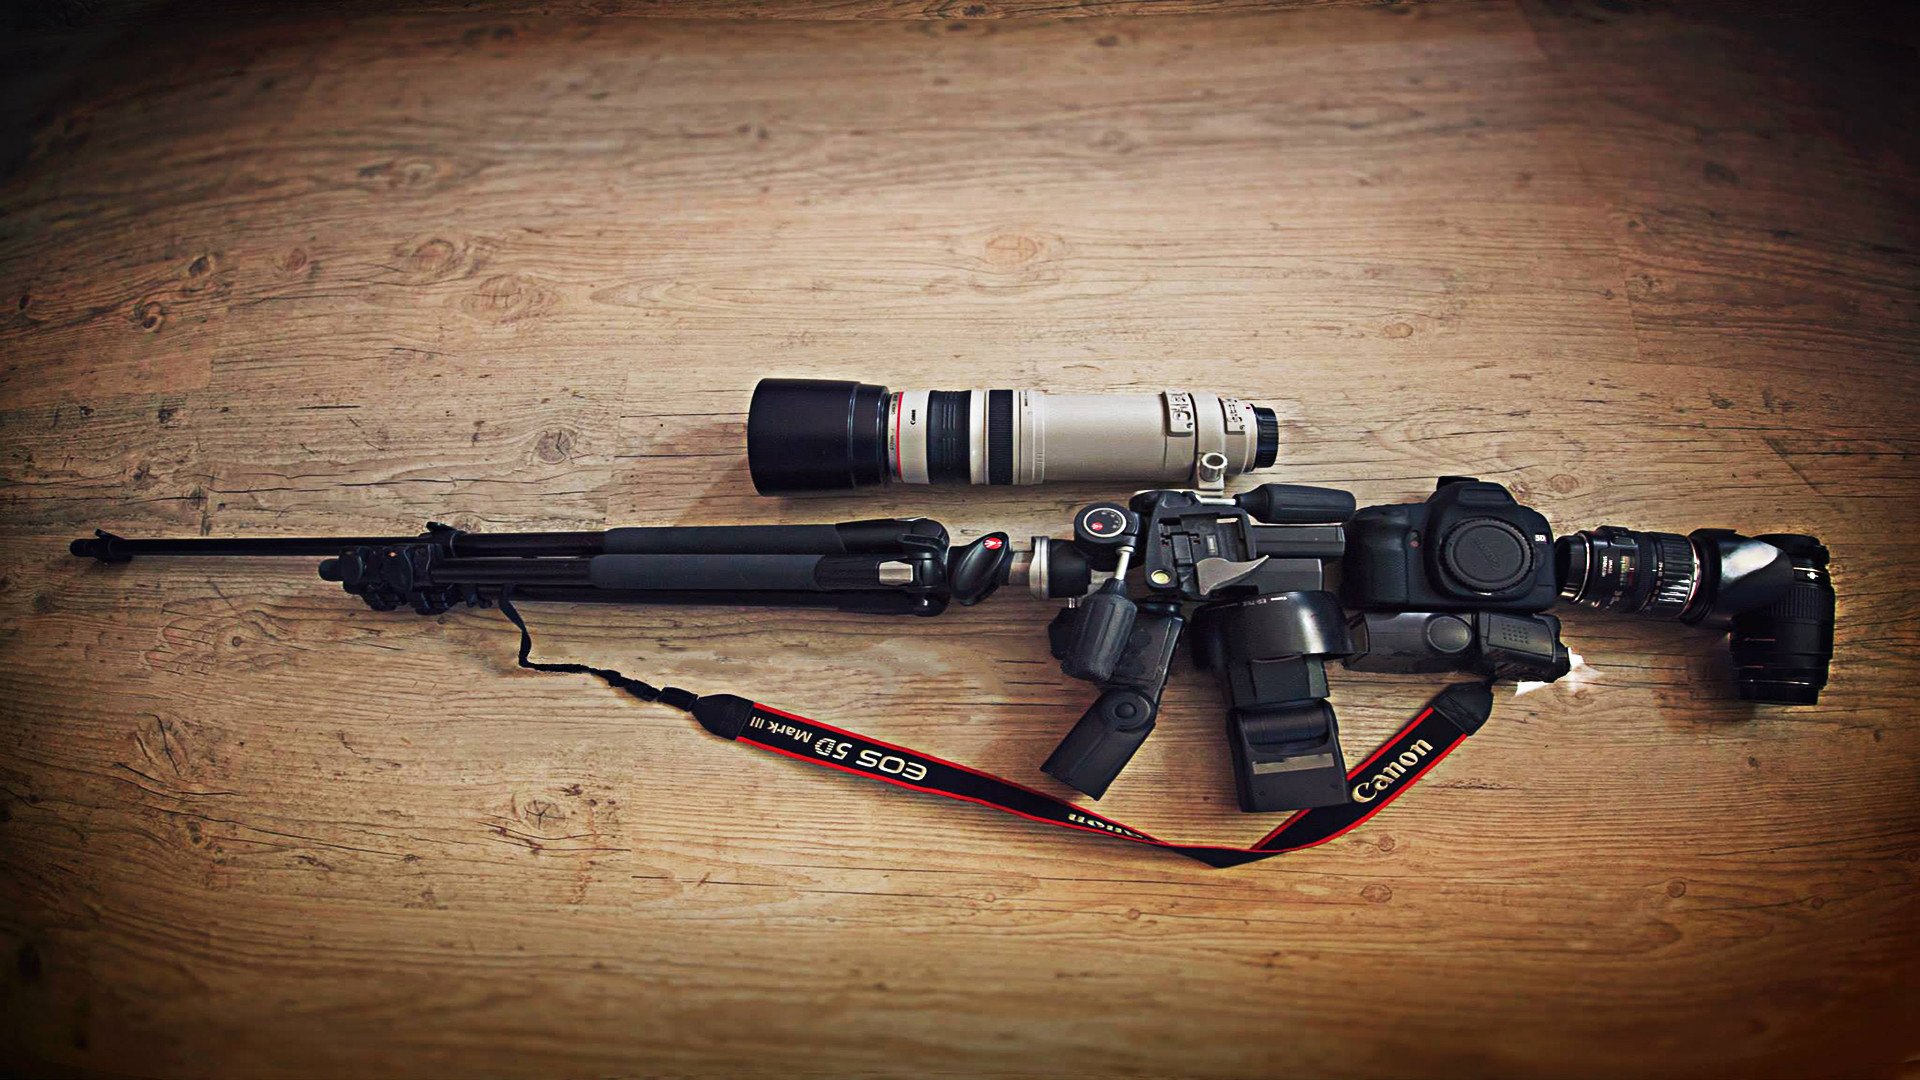 camera, Canon, Lens, Weapon, Rifles, Tripod, Sniper rifle, Manfrotto Wallpaper